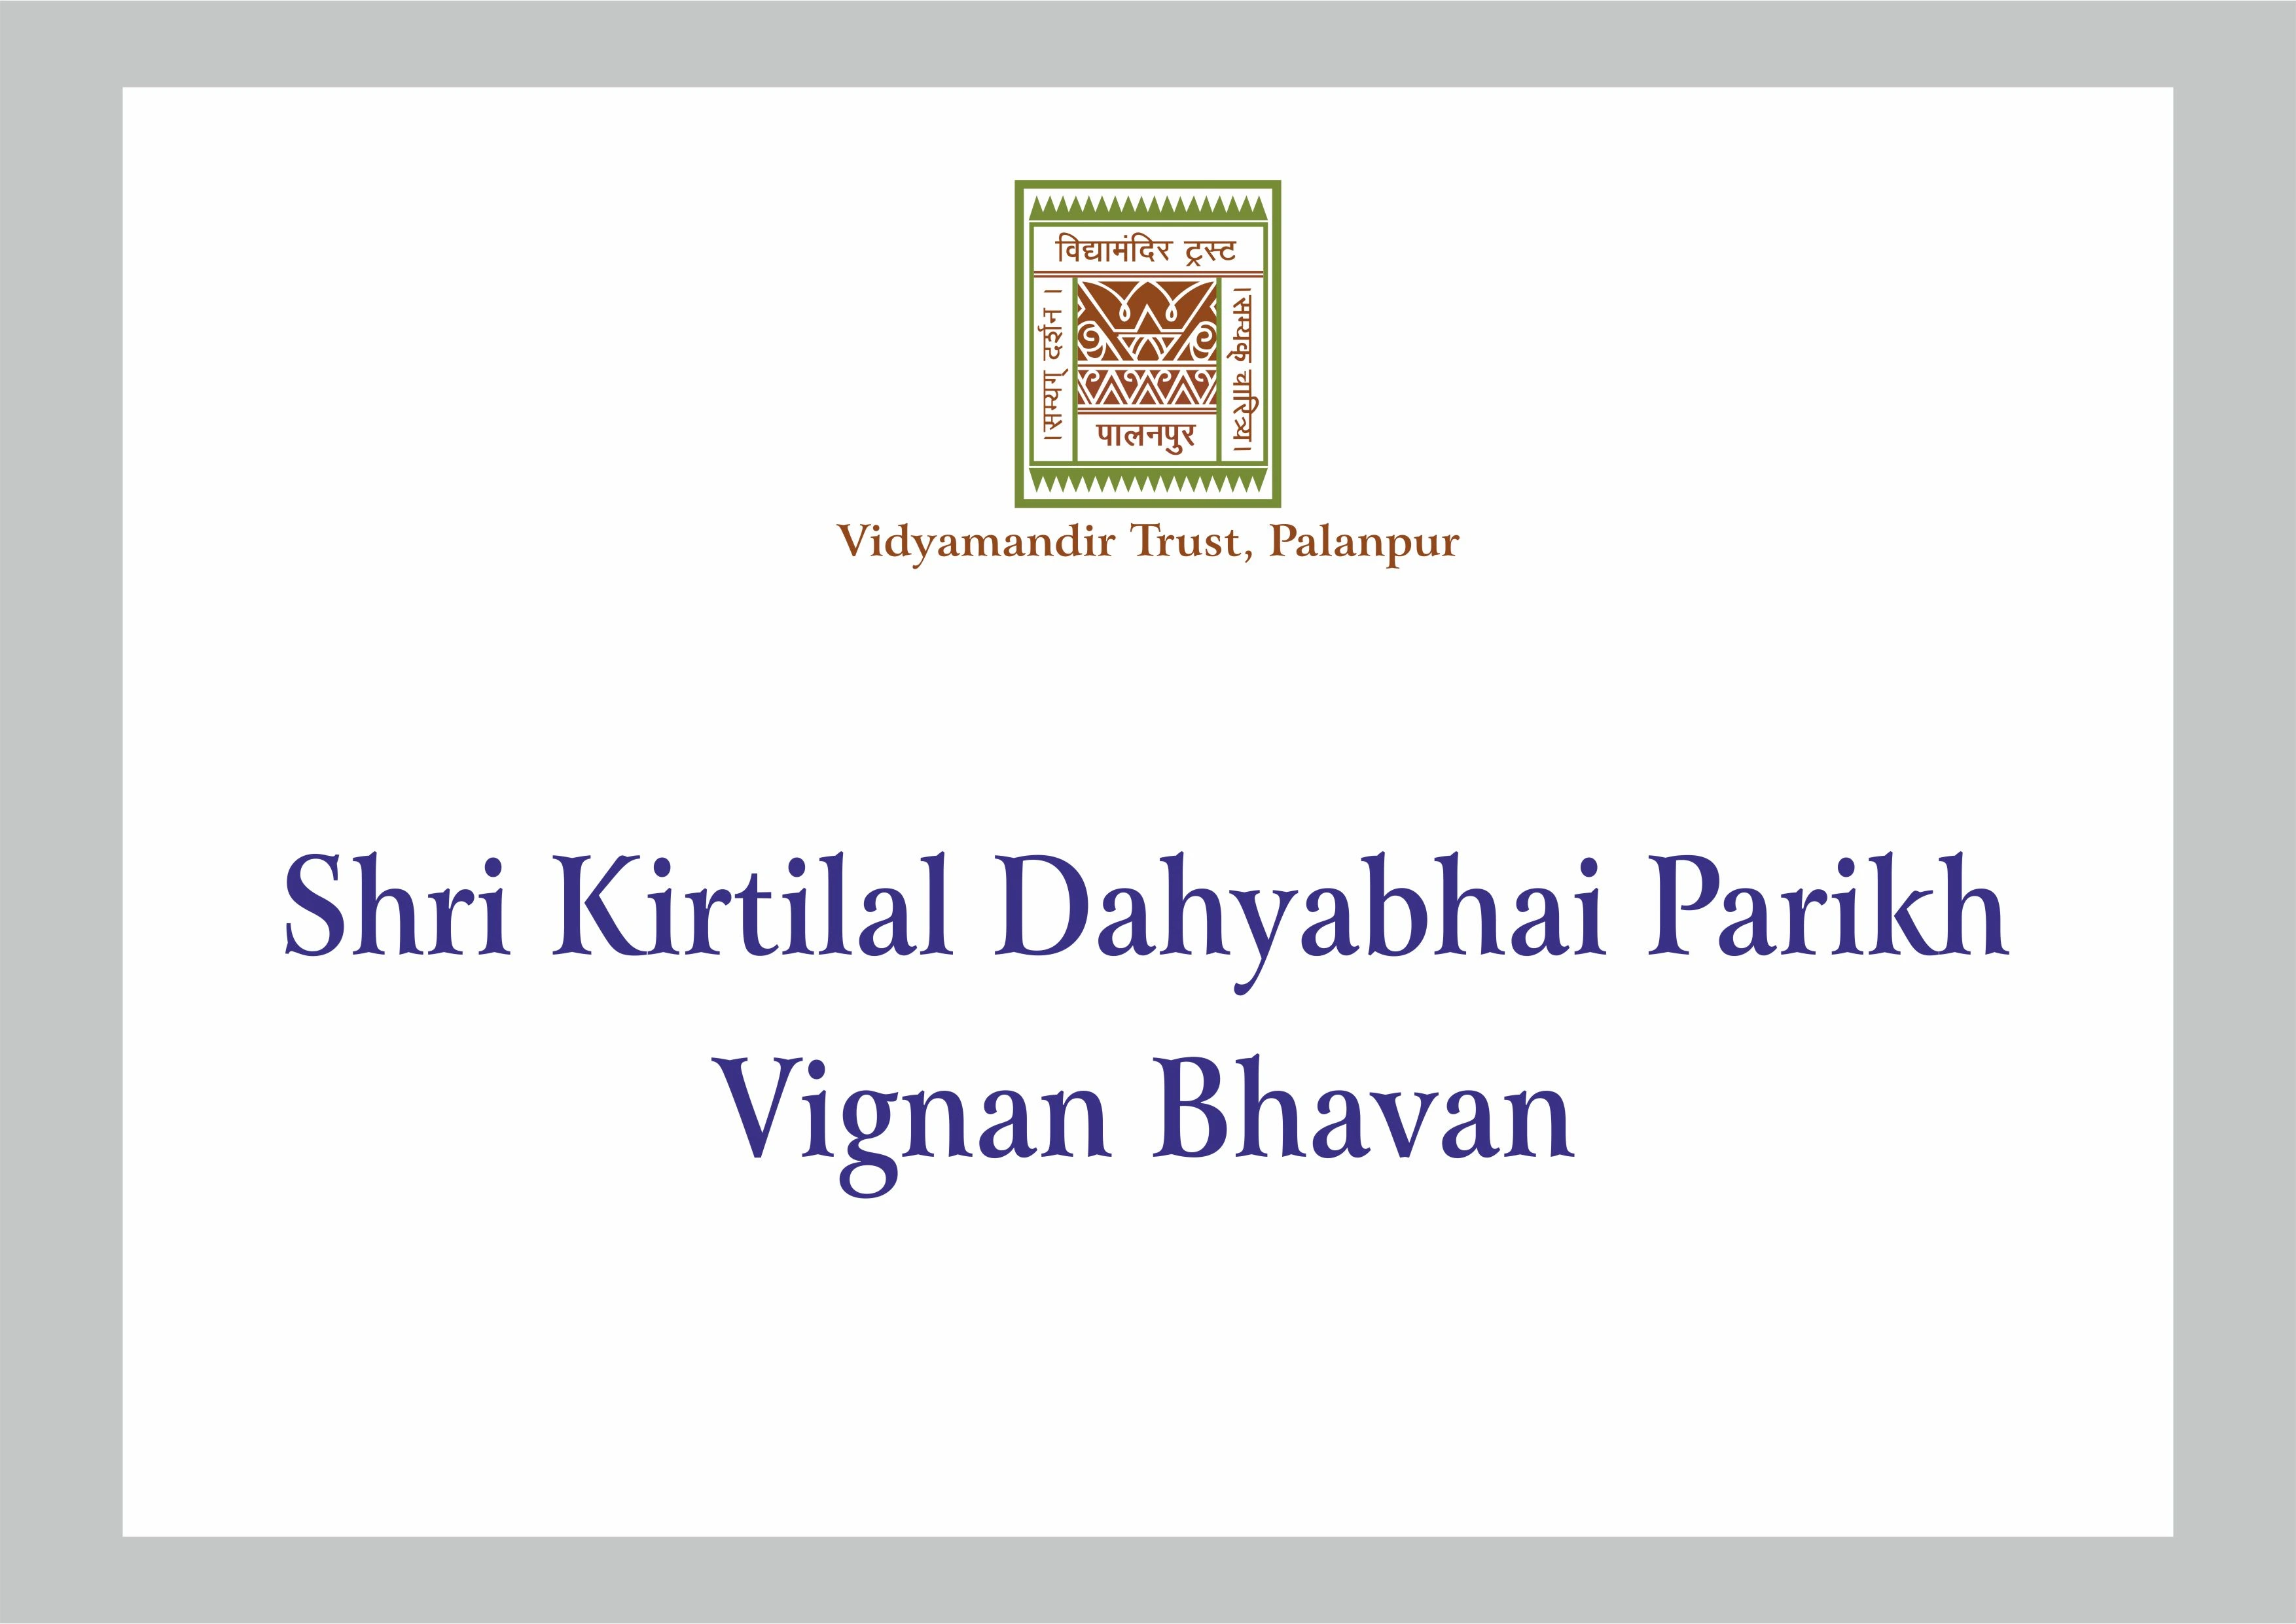 Shri Kirtilal Dahyabhai Parikh Vignan Bhavan - Building Photo